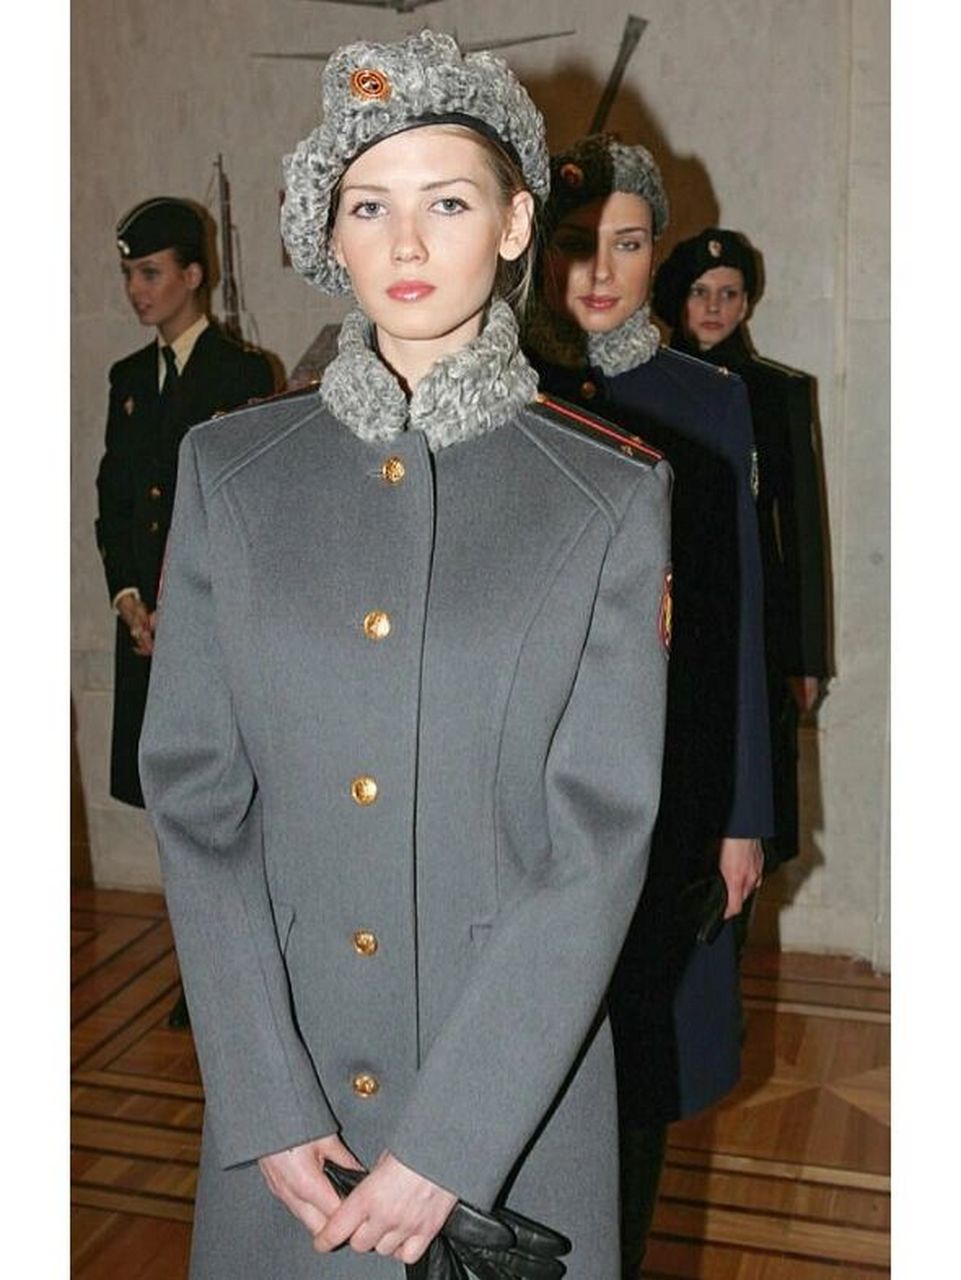 我的收藏:俄罗斯女军官冬礼服 稀有的俄罗斯08条例陆军女军官冬礼服